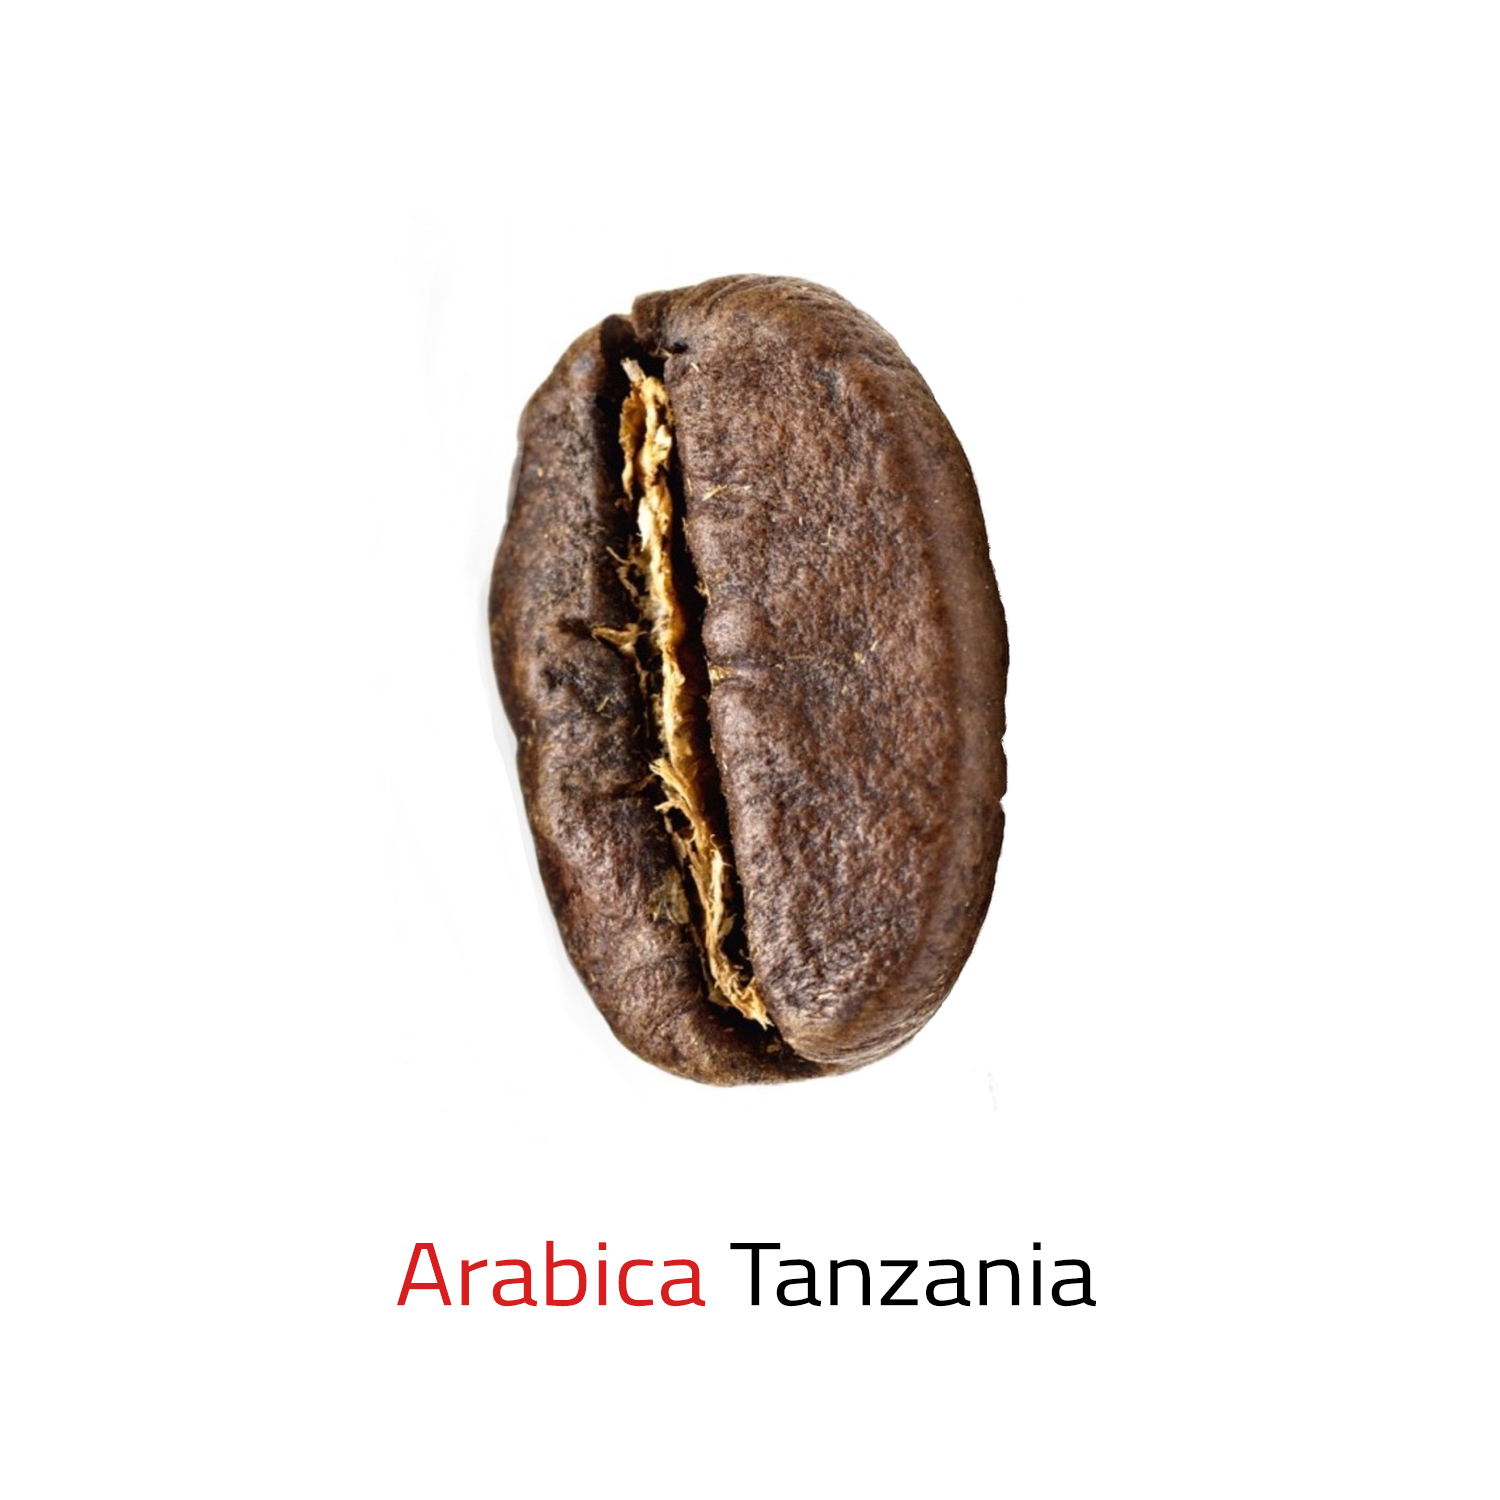 Arabica Tanzania